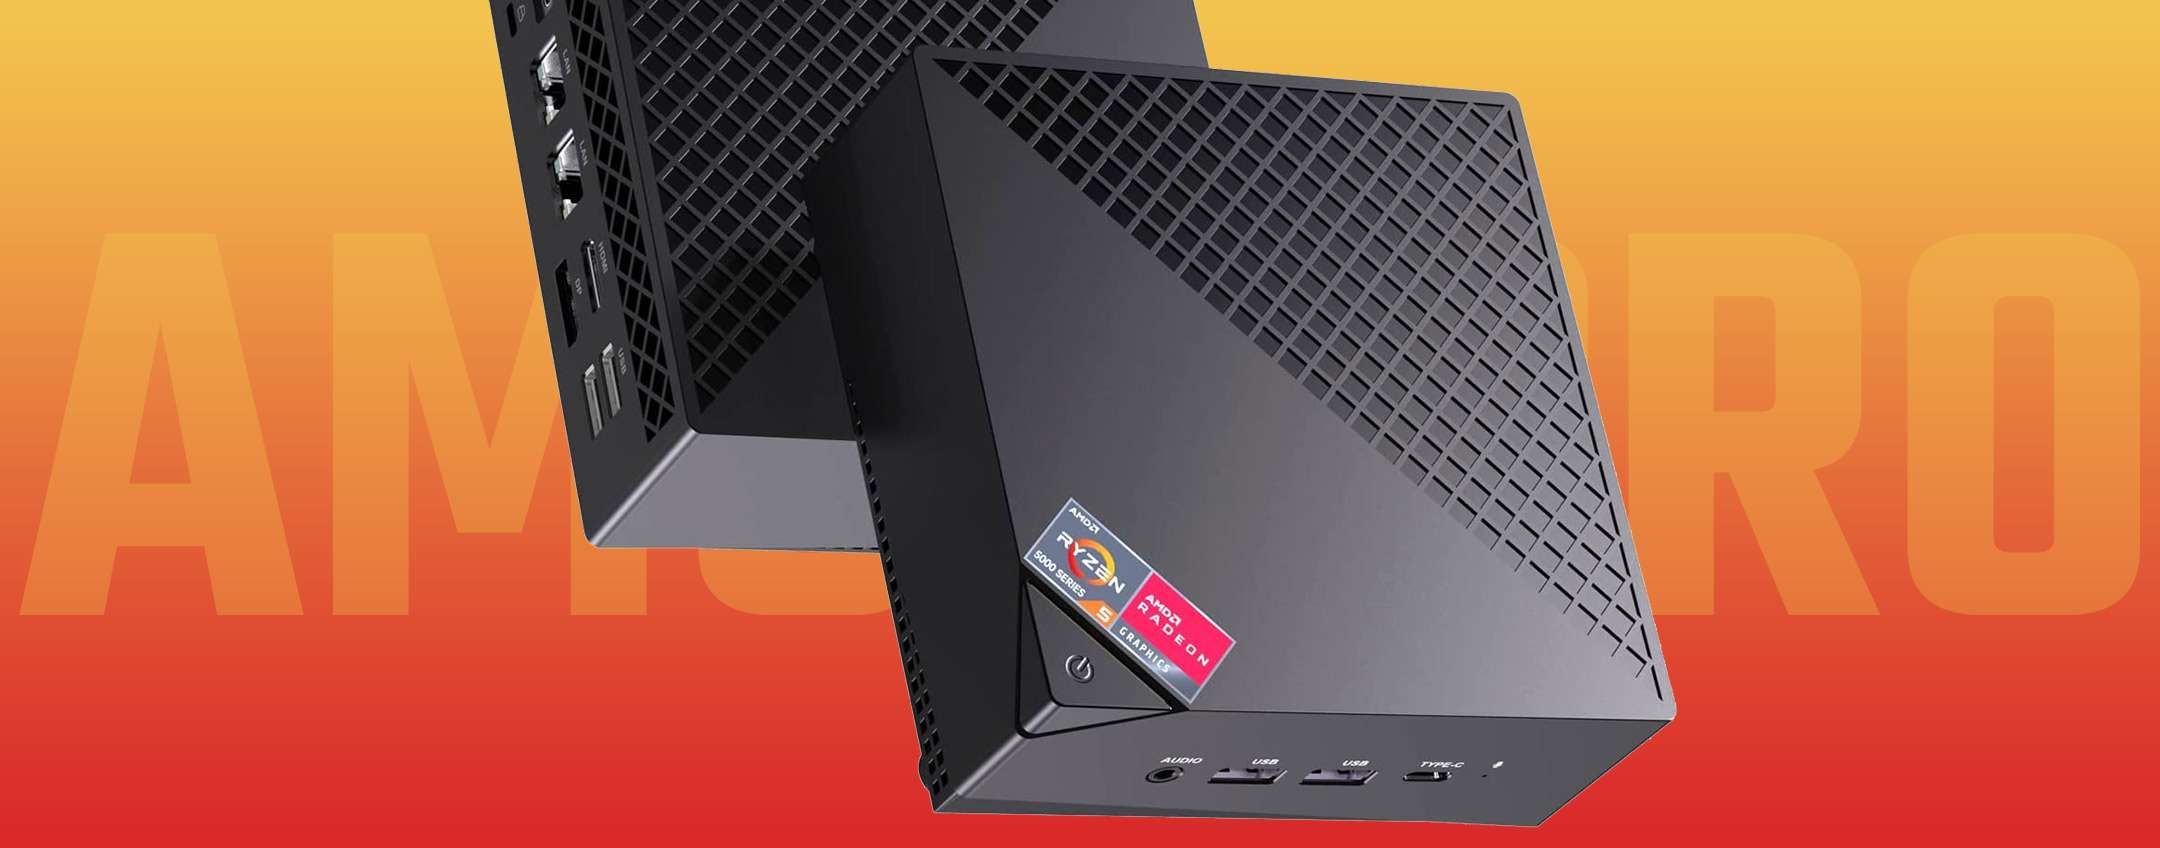 Mini PC NiPoGi AM06 PRO Gaming, è mini anche il prezzo MENO 56 PER CENTO! -  Webnews